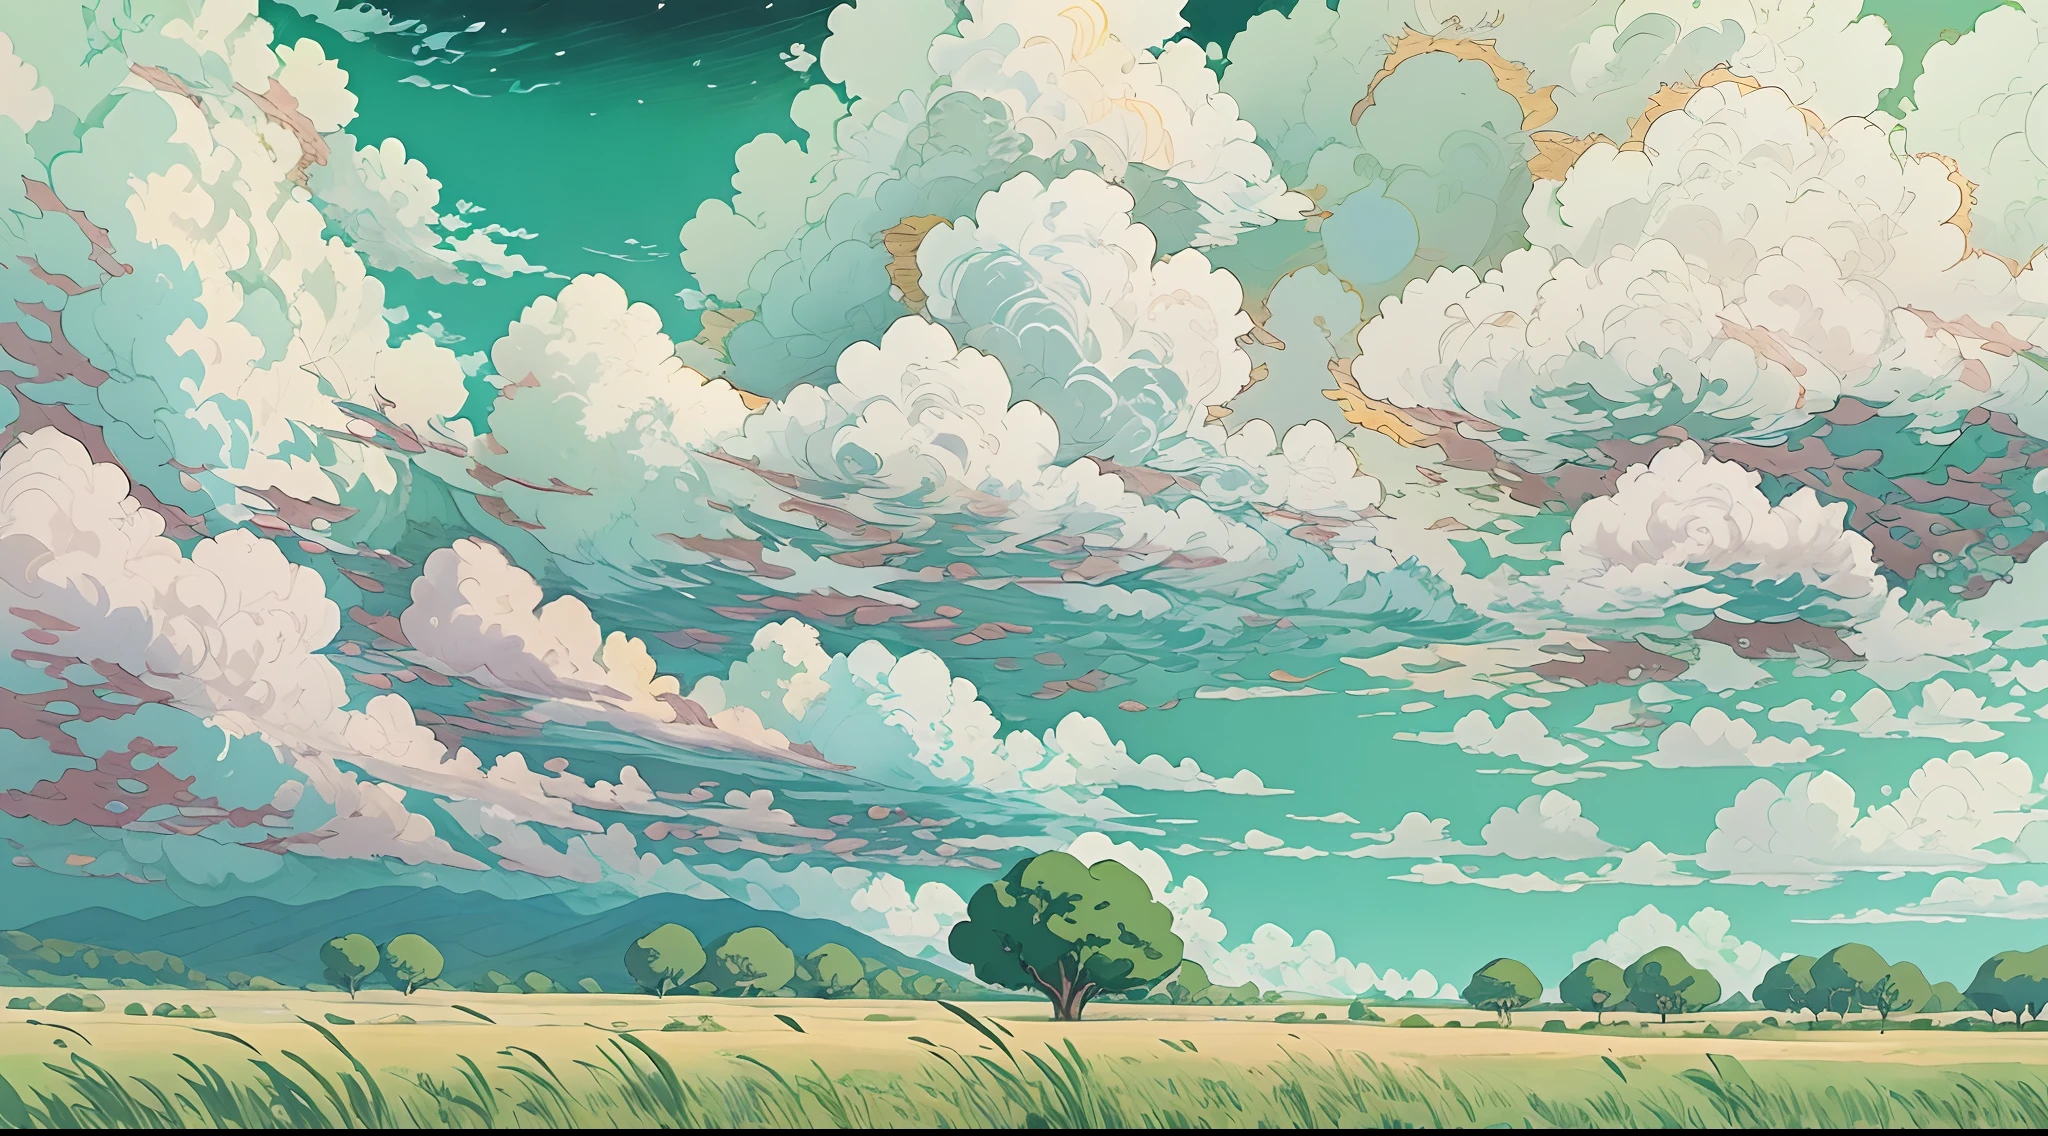 實際的, 真正的, 美麗而令人驚嘆的風景油畫吉卜力工作室宮崎駿&#39;藍天白雲的s花瓣草原--v6